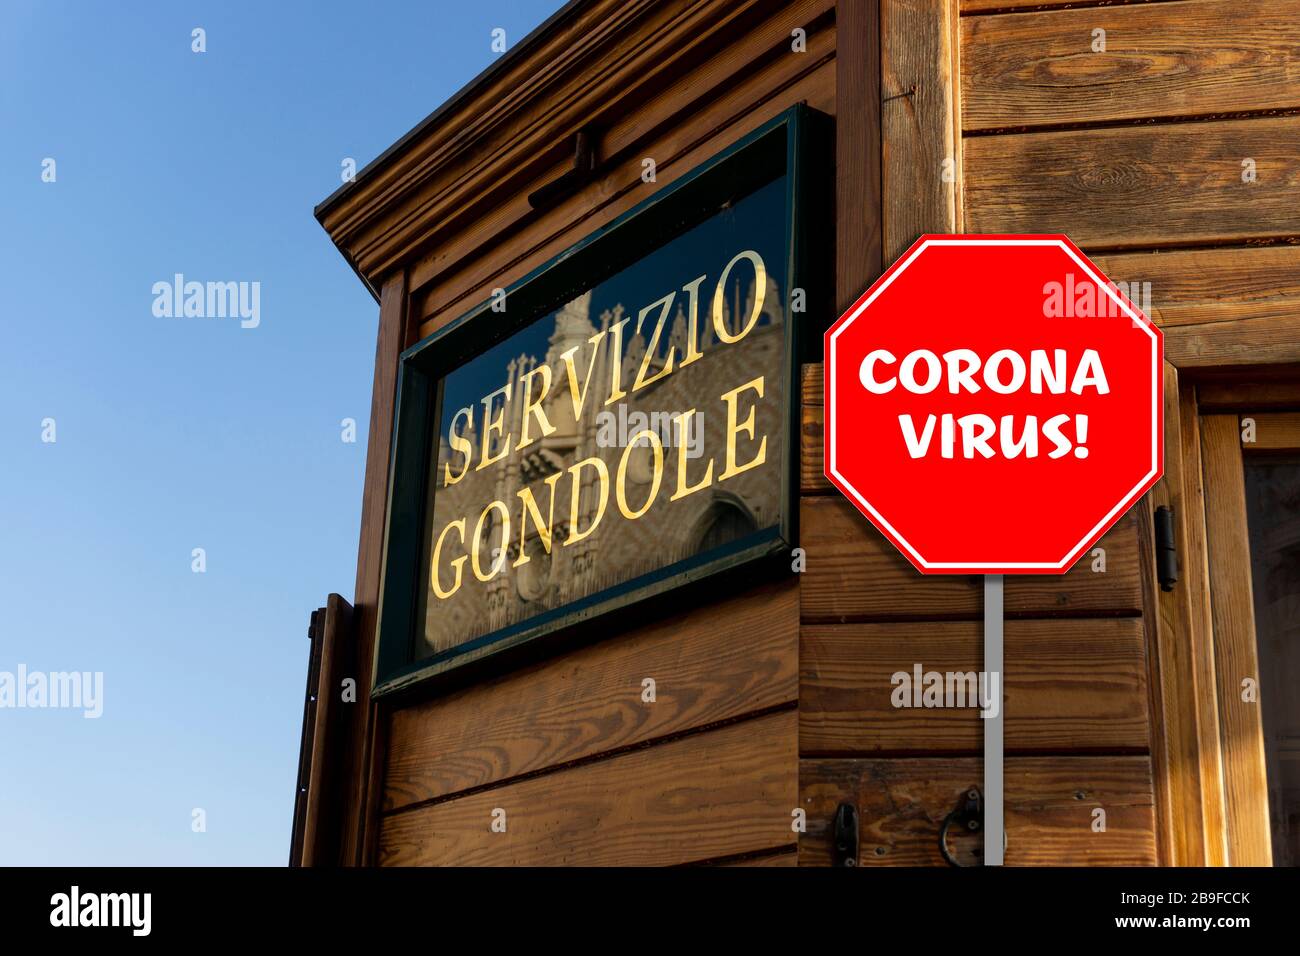 Vue sur le remblage en bois du Servizio Gondole à Venise avec un panneau d'arrêt qui dit Corona virus! Banque D'Images